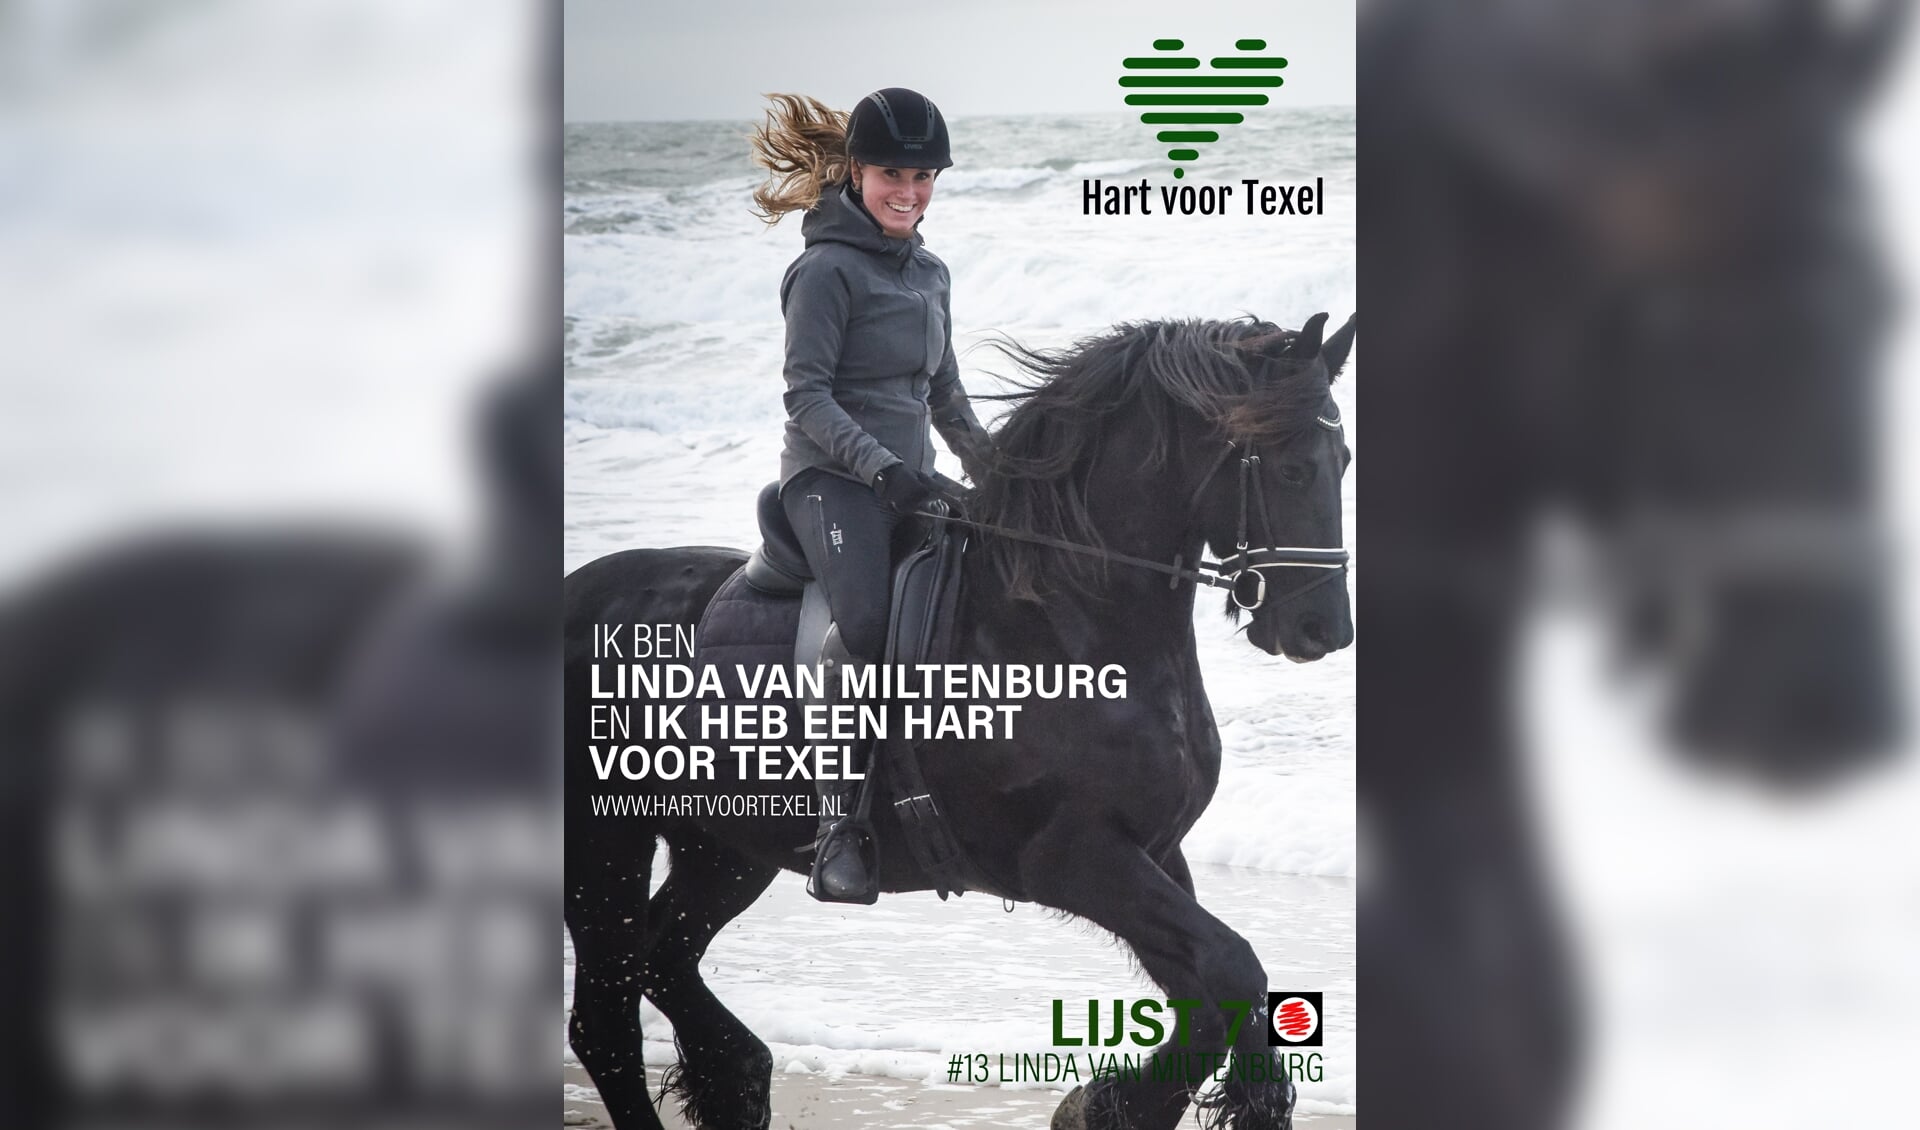 Linda gaat zich met Hart voor Texel o.a. inzetten om jongeren te stimuleren om te gaan sporten en dit voor alle jongeren mogelijk te maken.